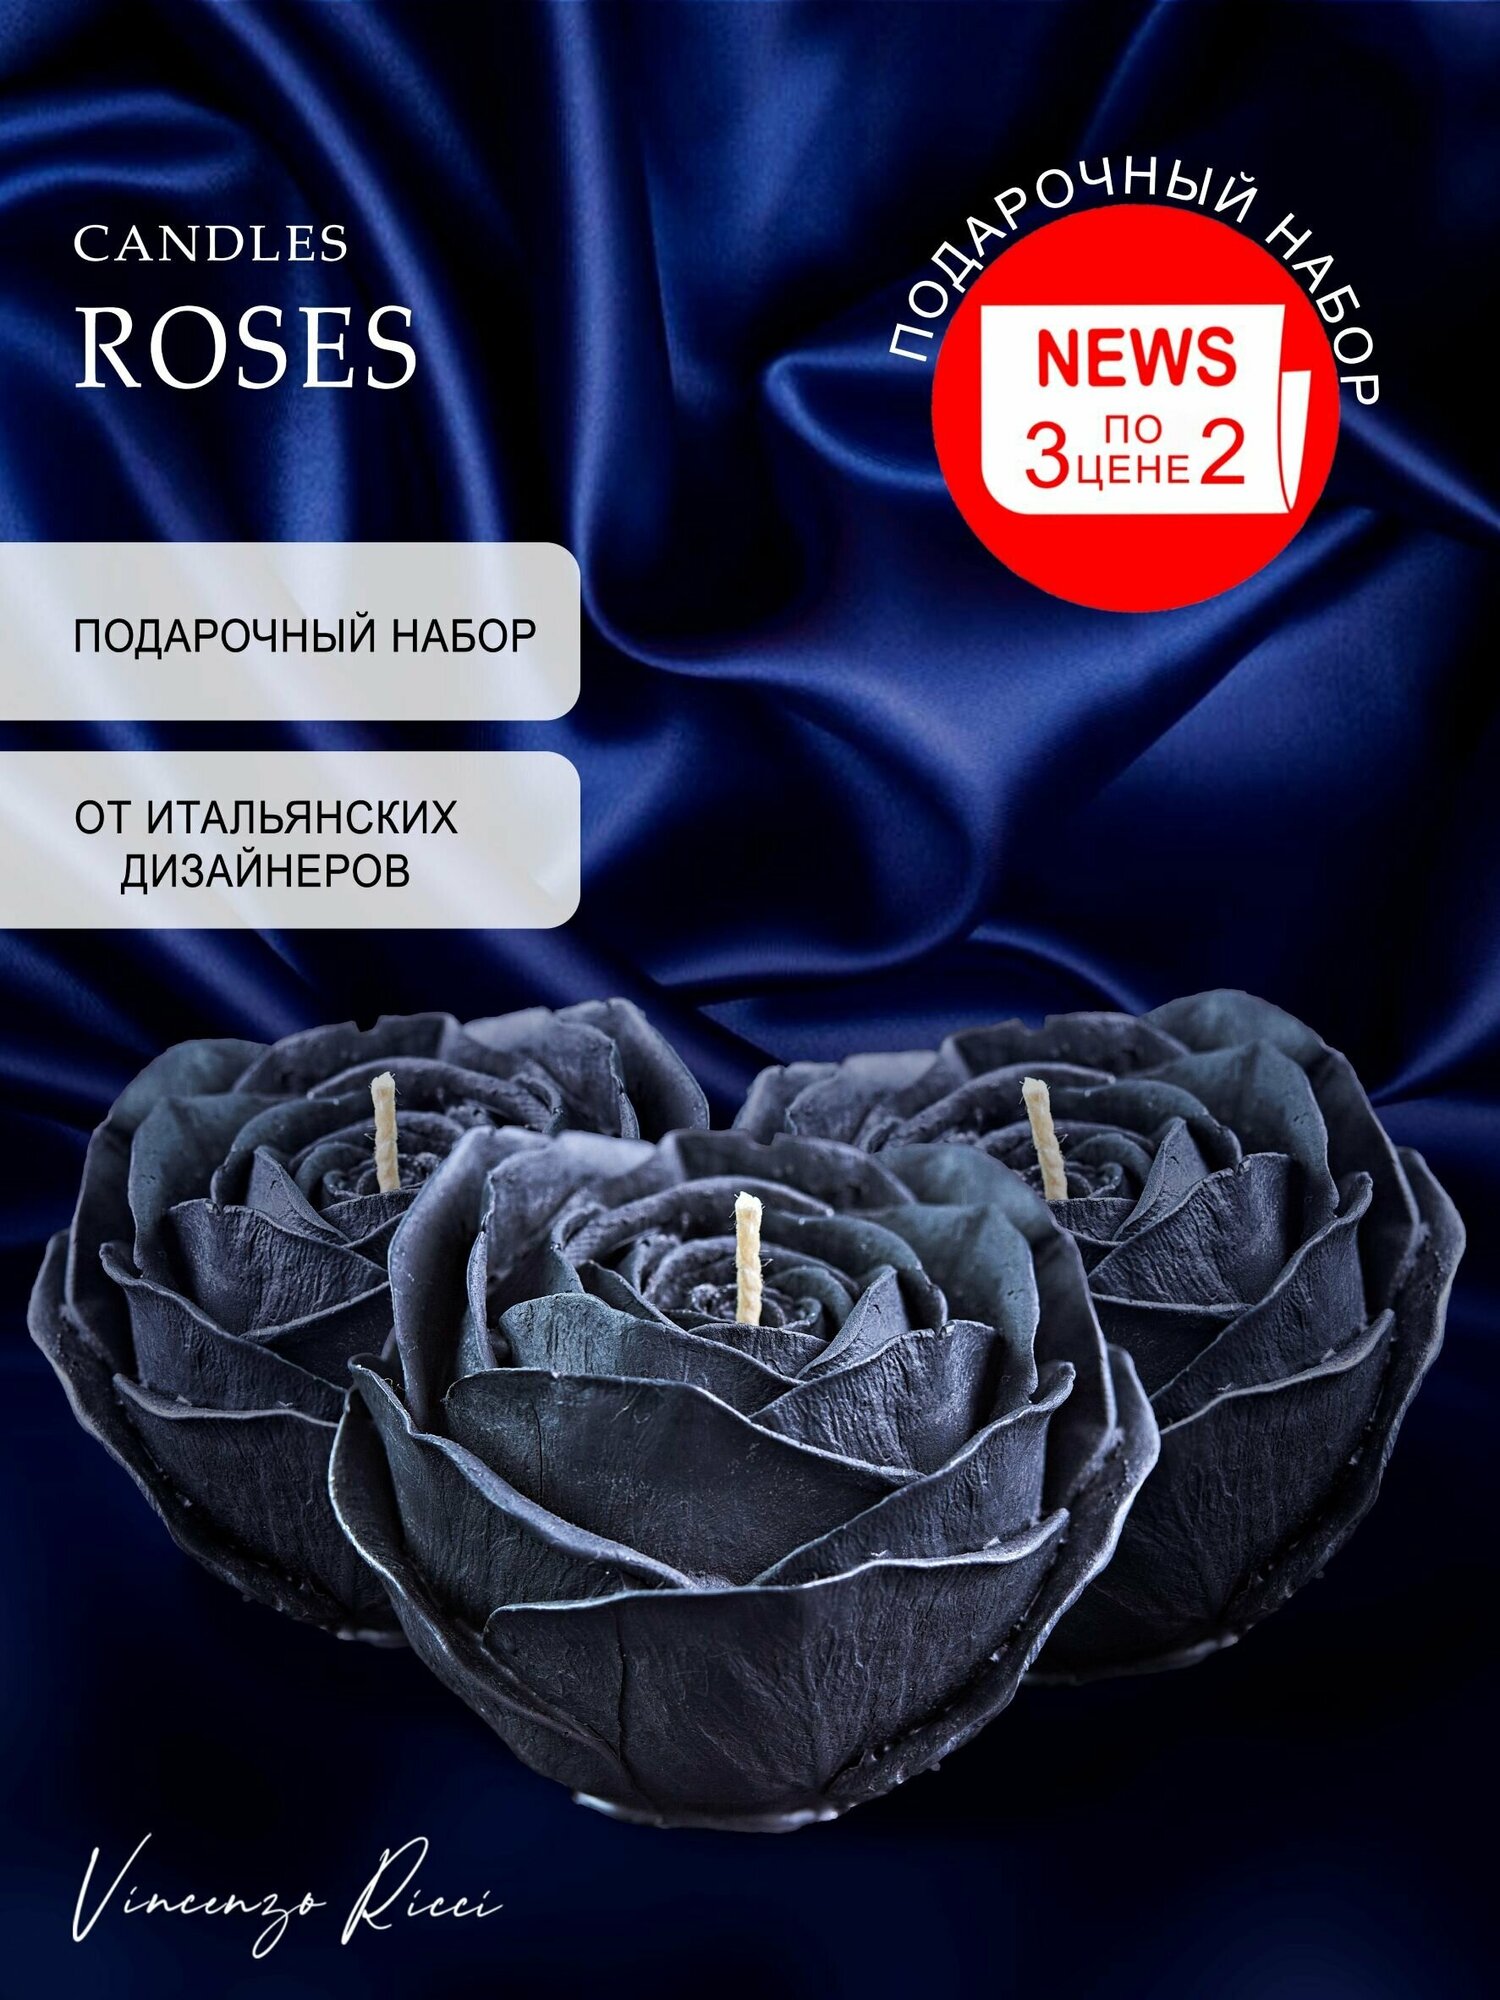 Свеча восковая , интерьерная, декоративная, подарочная, фигурная, натуральная, для подарка на 8 марта и 14 февраля "Набор Розы" 3 шт черные